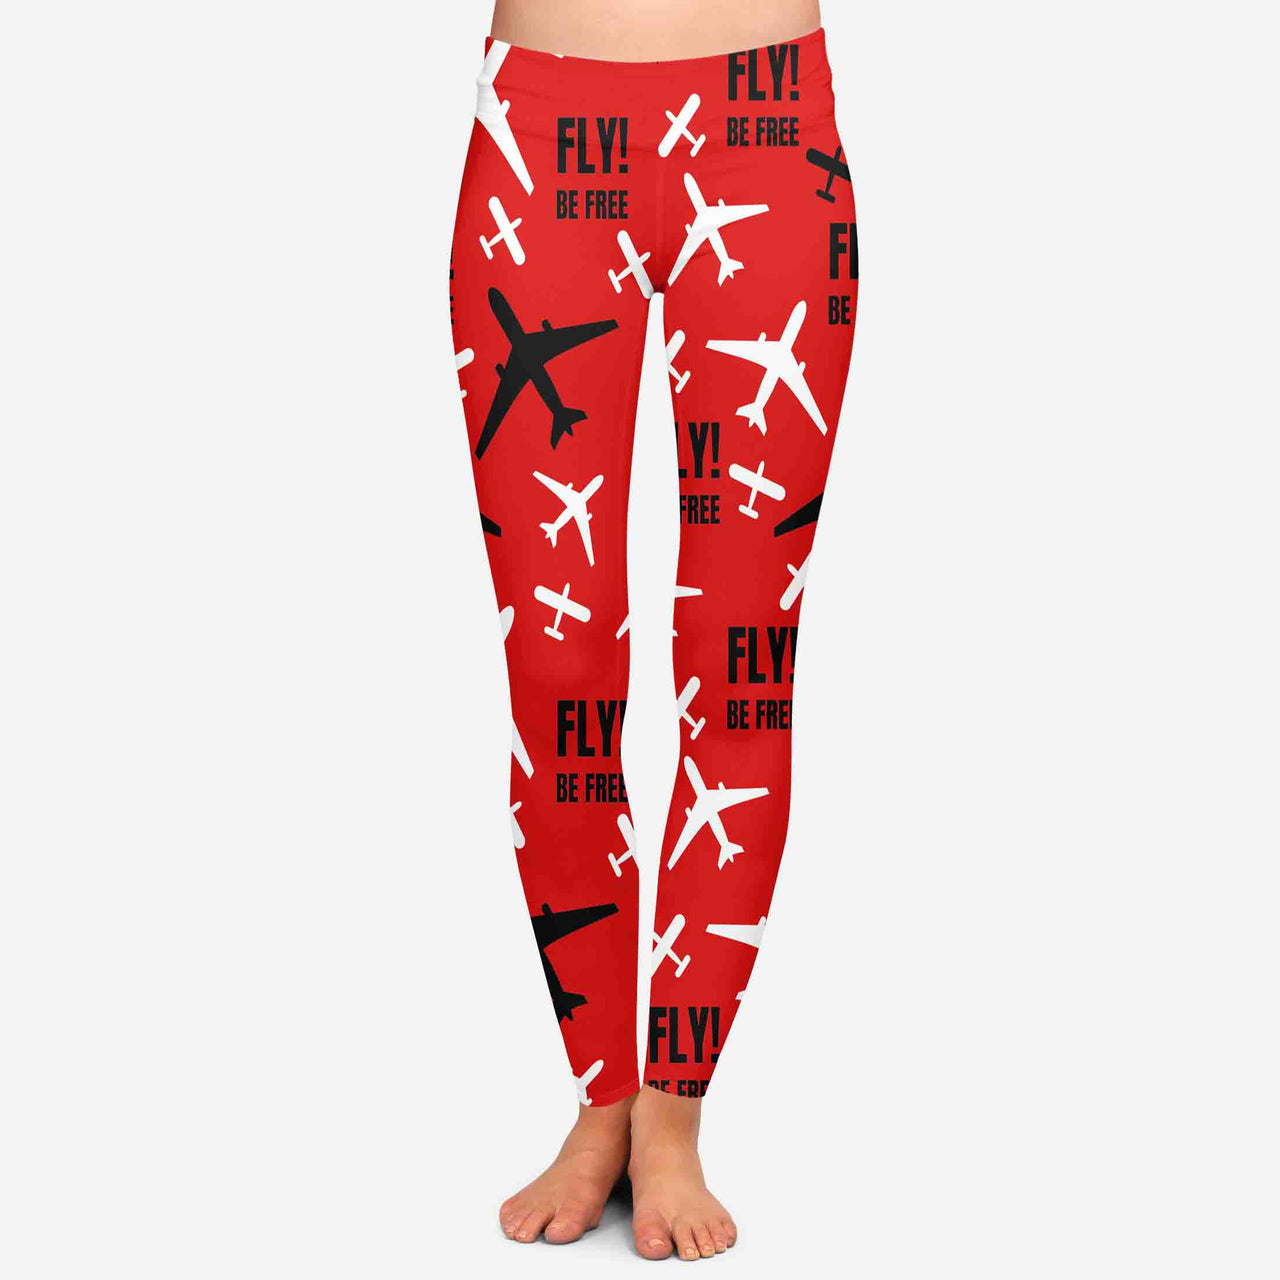 Fly be Free (Red) Designed Women Leggins